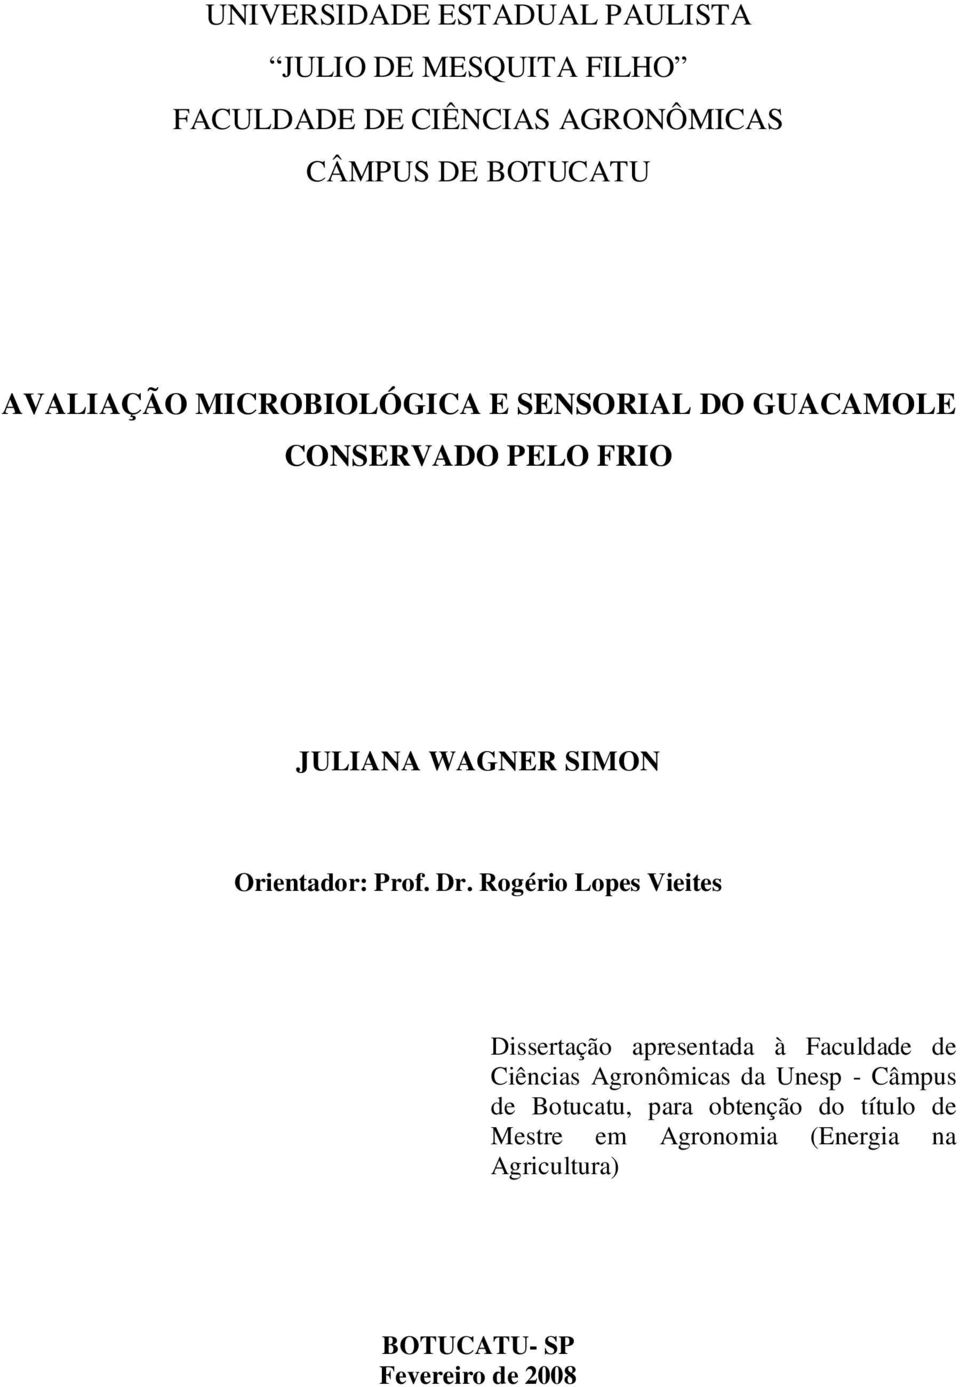 Dr. Rogério Lopes Vieites Dissertação apresentada à Faculdade de Ciências Agronômicas da Unesp - Câmpus de